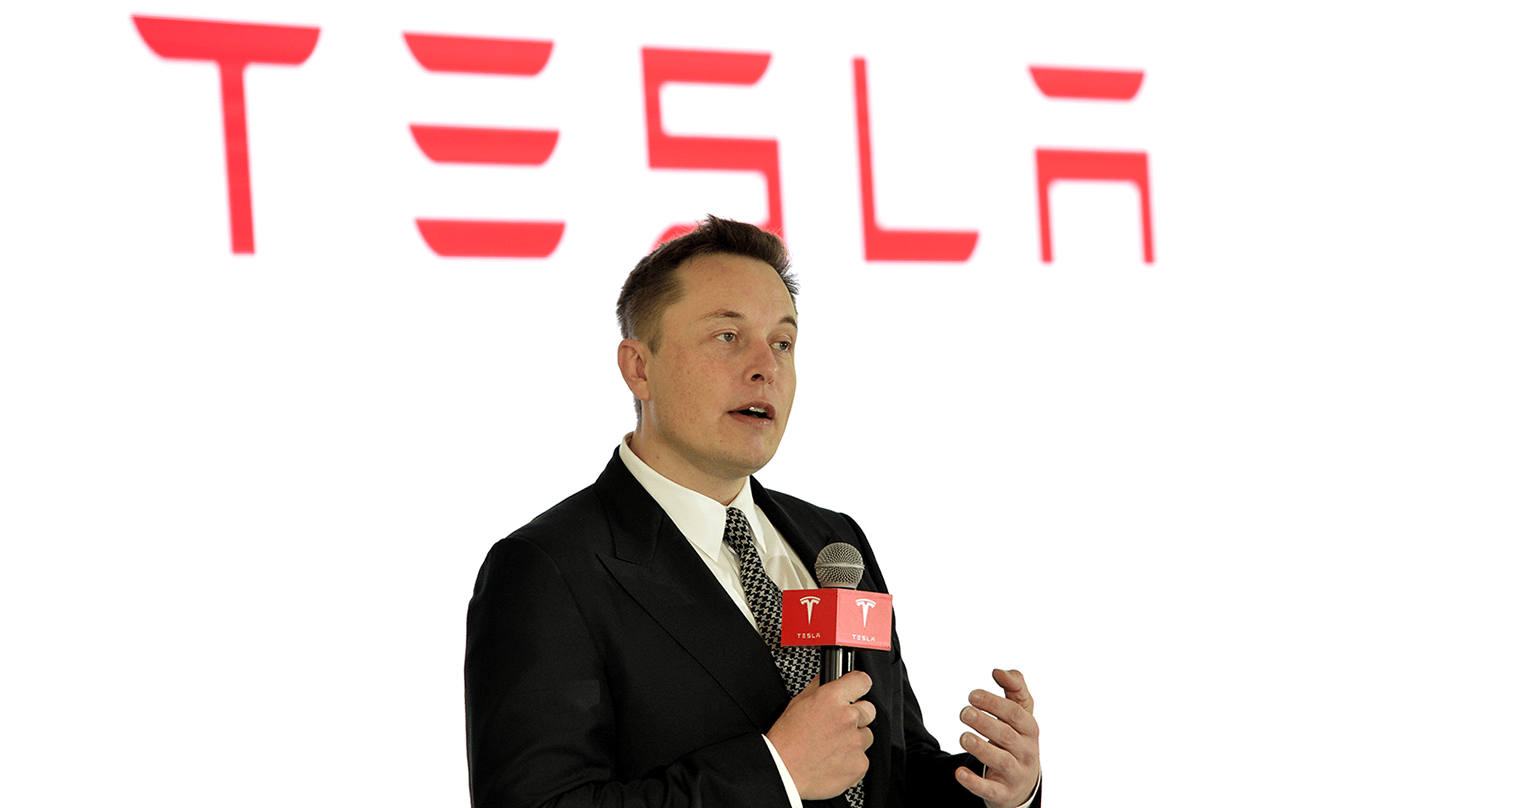 Steht Twitter-Kauf bevor? Musk verkauft Tesla-Aktien